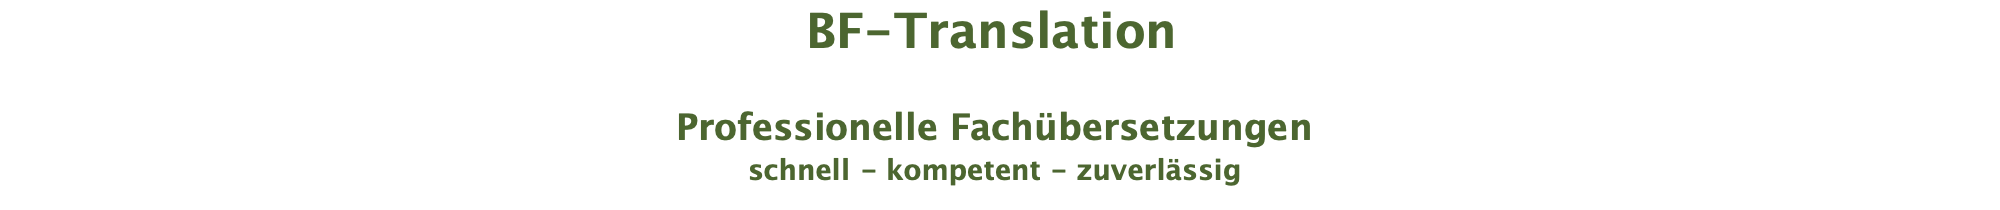 BF-Translation  Professionelle Fachübersetzungen schnell - kompetent - zuverlässig